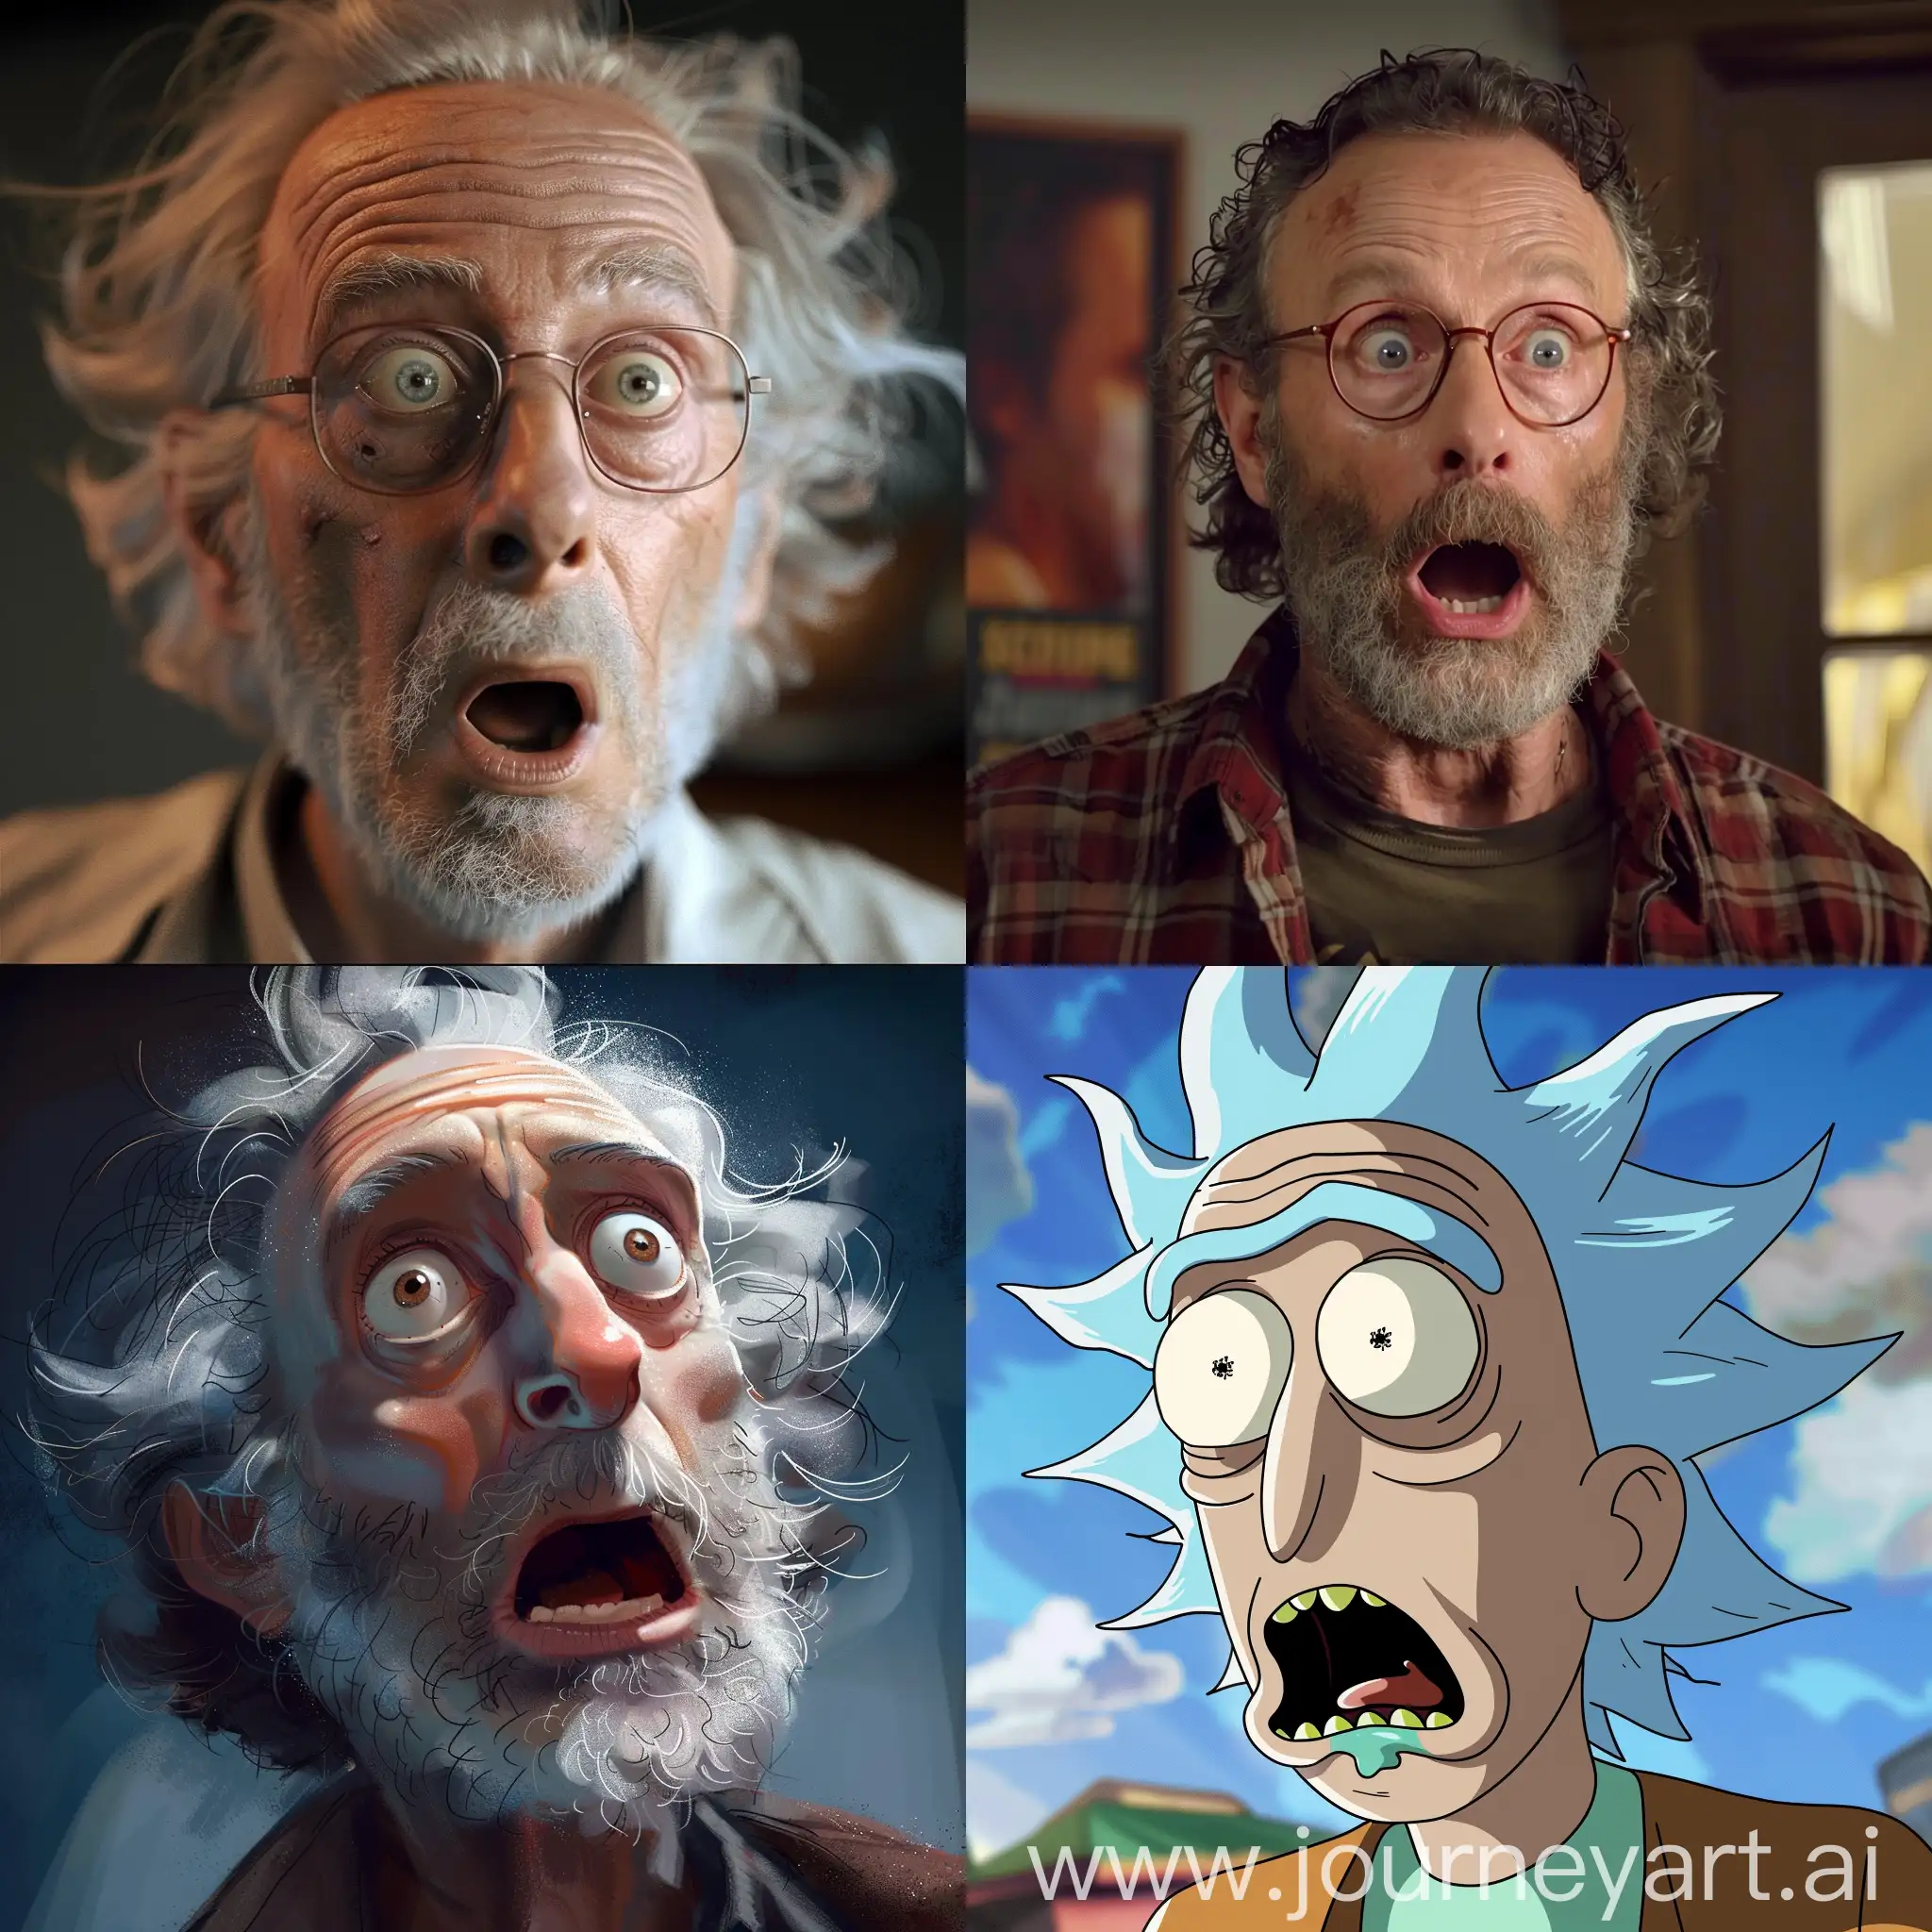 Surprised-Rick-Portrait-in-Vibrant-Colors